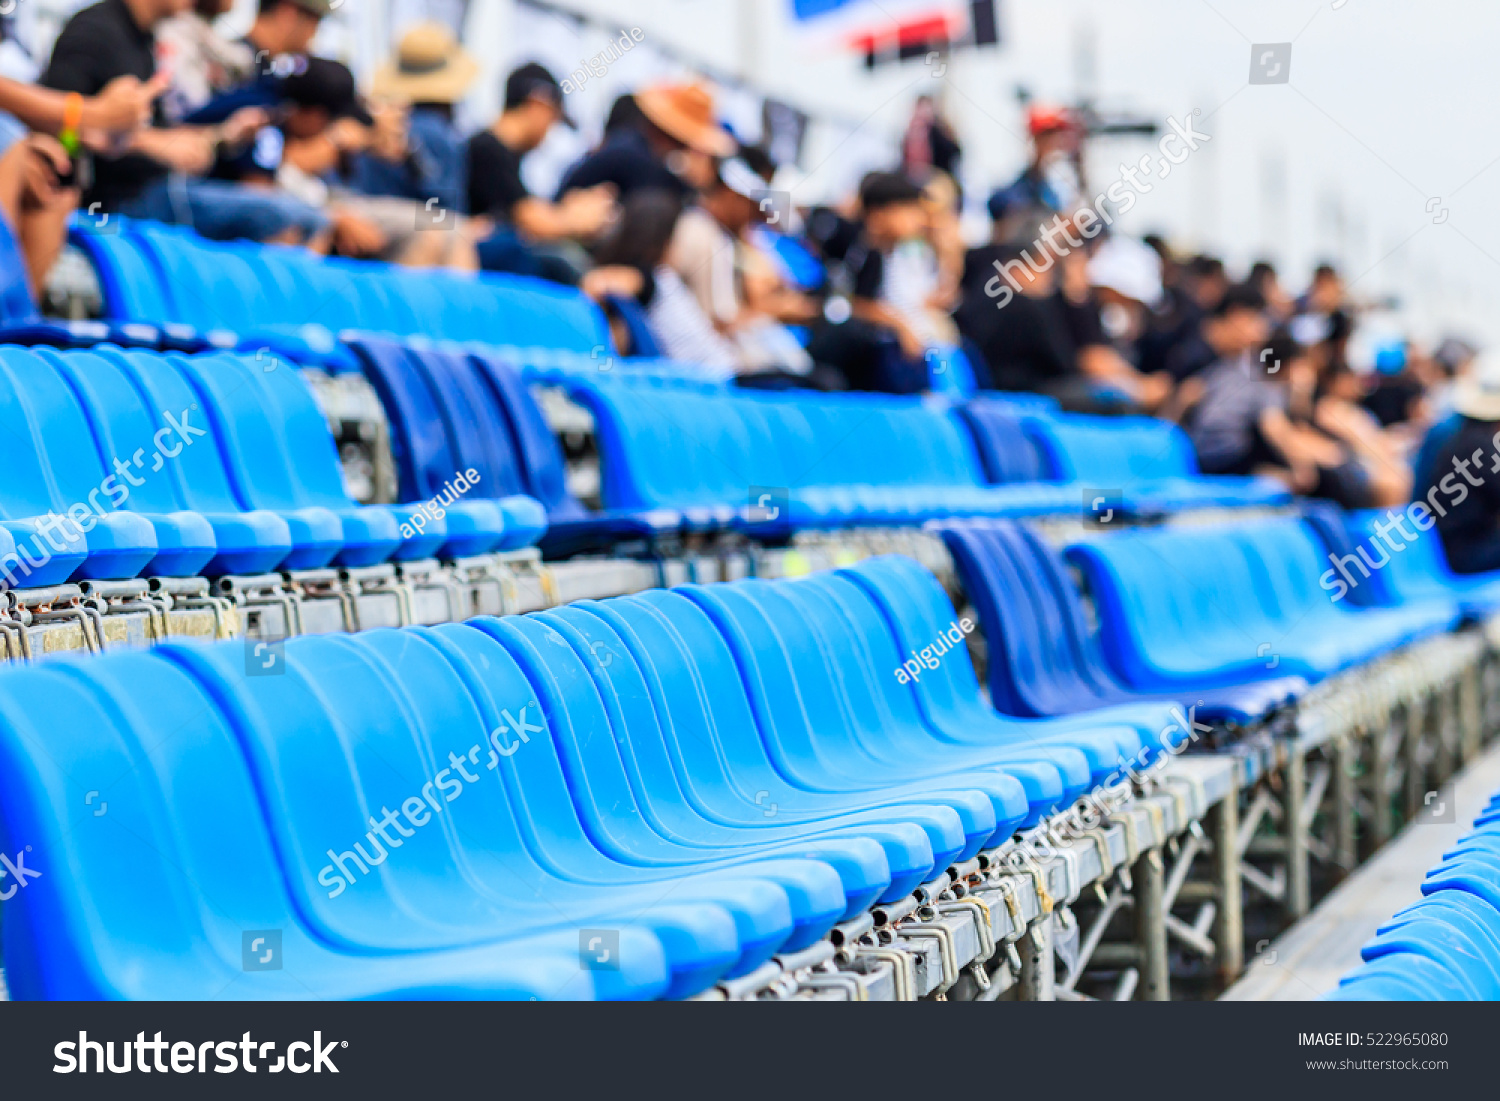 Stadium seats #522965080